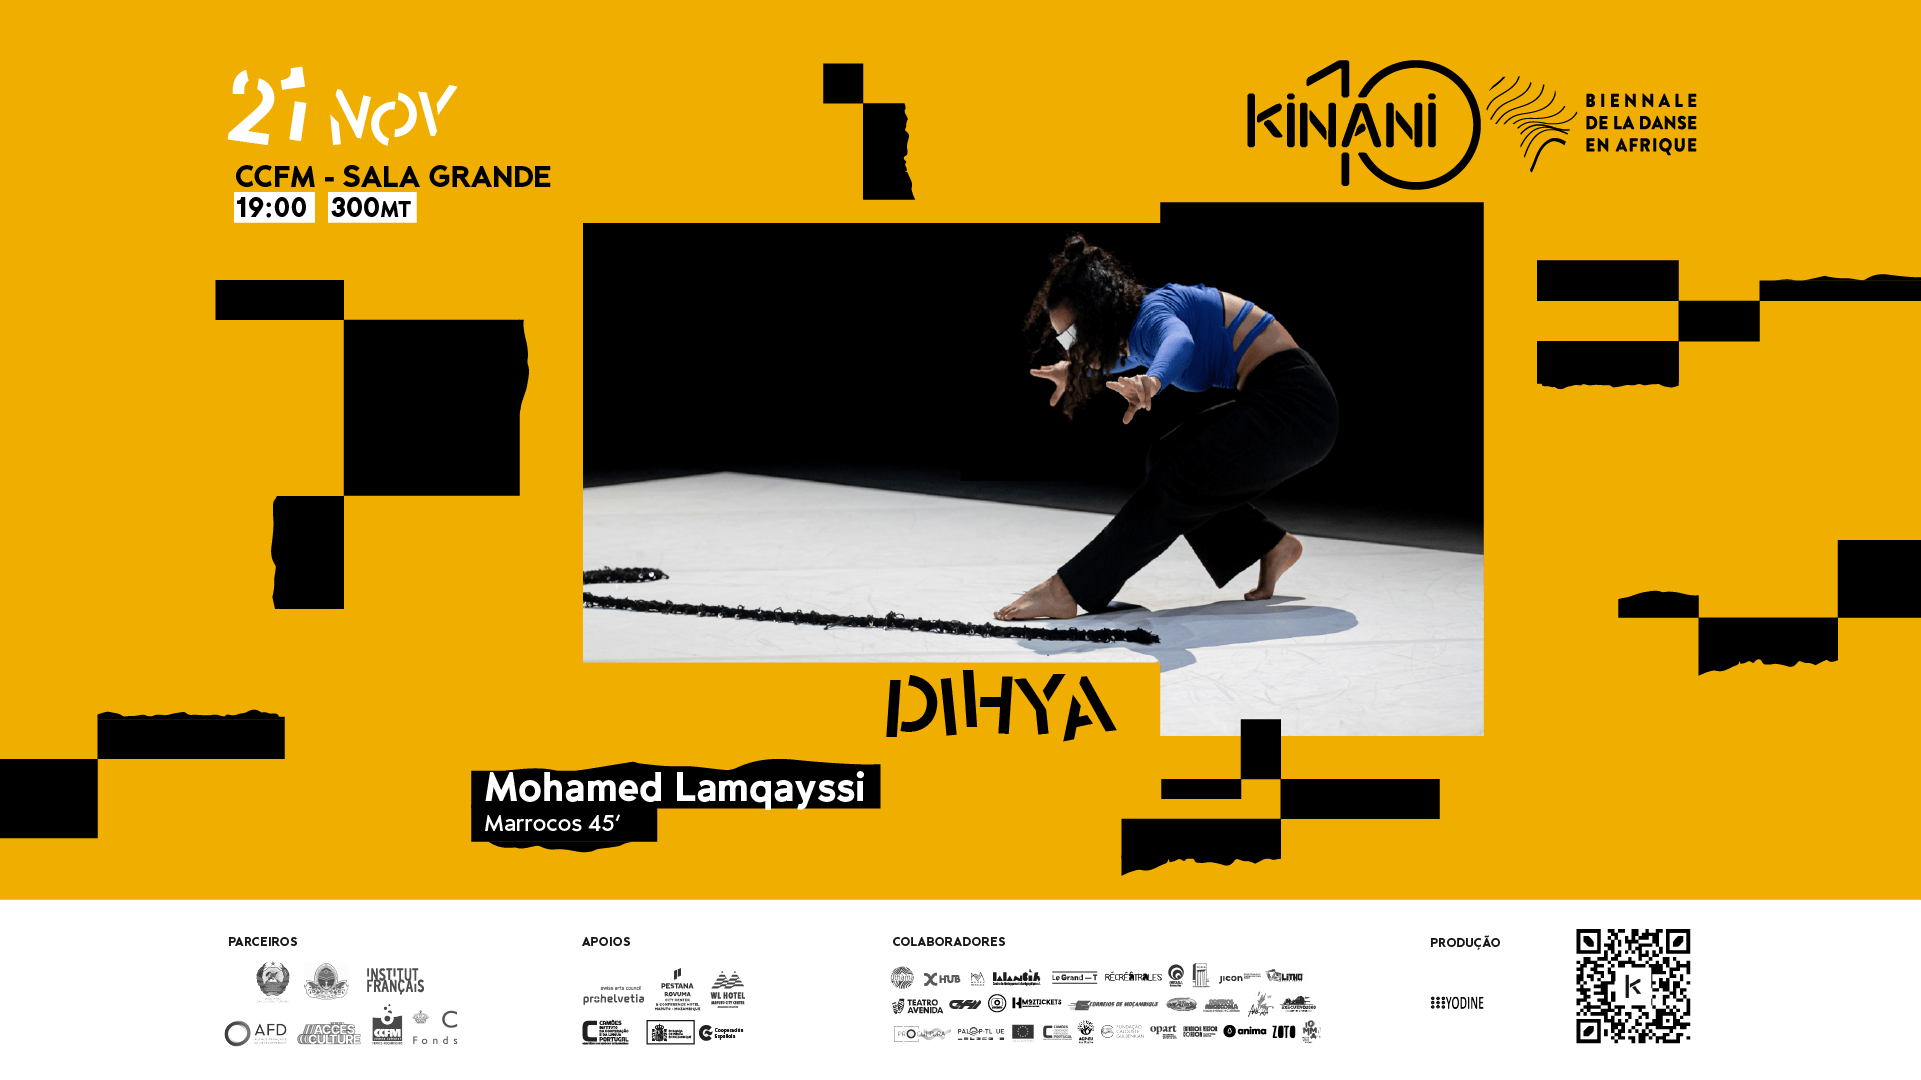 KINANI - Biennale de la Danse en Afrique | "Dihya" de Mohamed Lamqayssi